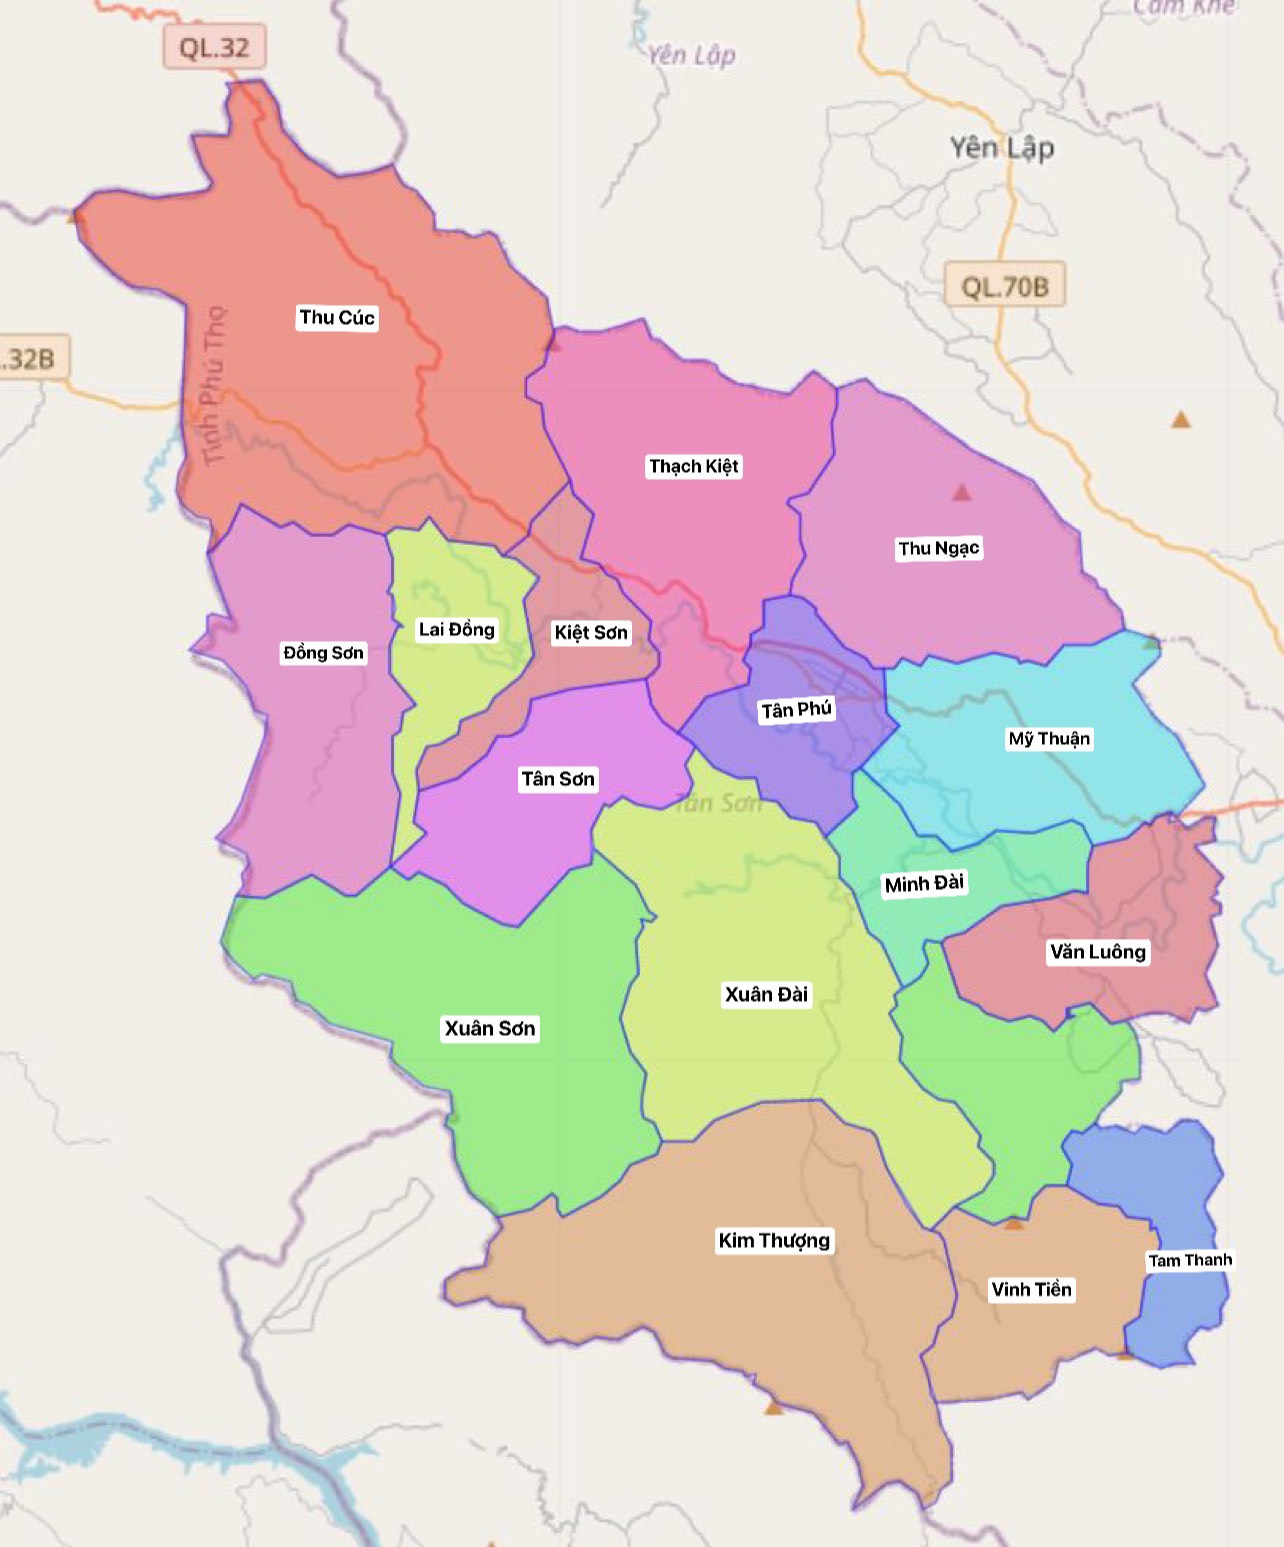 Bản đồ huyện Tân Sơn, Phú Thọ cung cấp đầy đủ thông tin du lịch hấp dẫn với nhiều địa điểm đẹp và lịch sử. Năm 2024, Tân Sơn sẽ phát triển mạnh mẽ và là một điểm đến không thể bỏ qua.